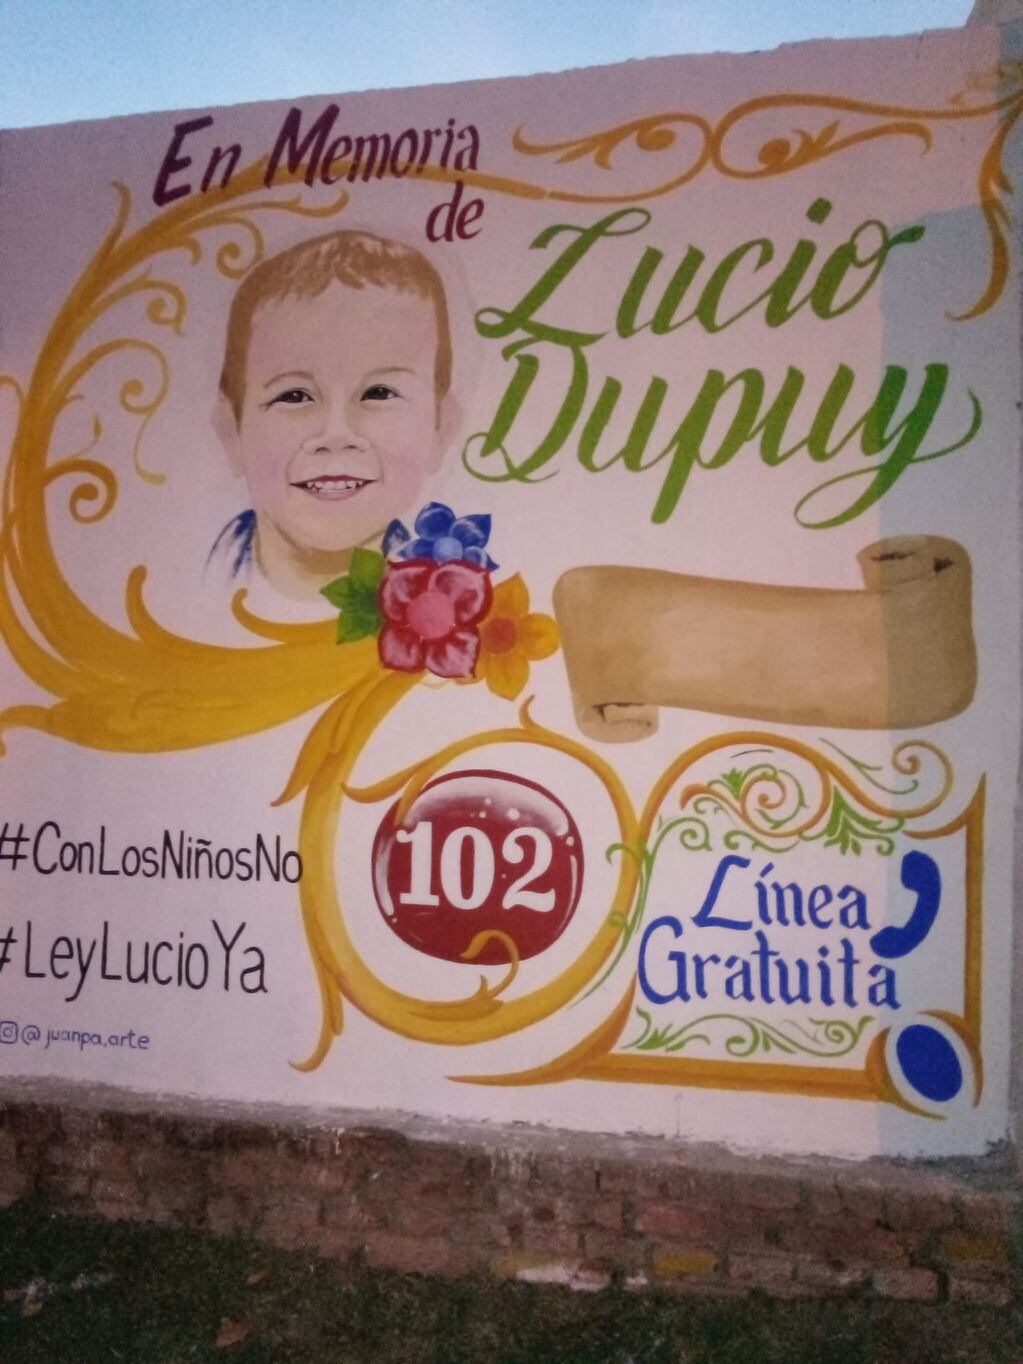 El mural en memoria de Lucio Dupuy, ubicado en barrio Don Bosco.